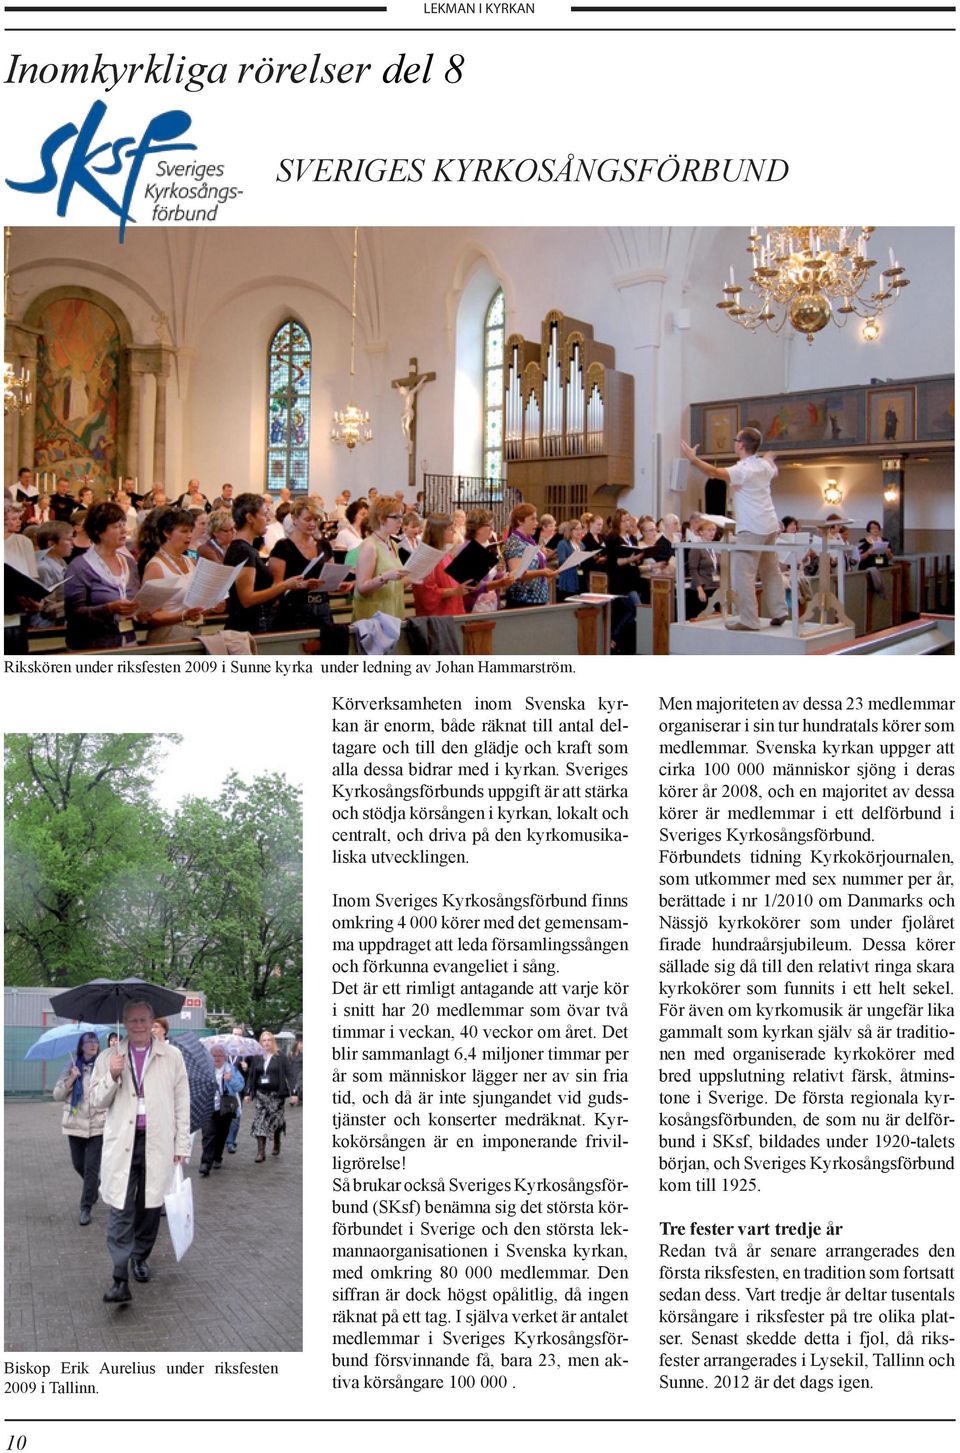 Sveriges Kyrkosångsförbunds uppgift är att stärka och stödja körsången i kyrkan, lokalt och centralt, och driva på den kyrkomusikaliska utvecklingen.